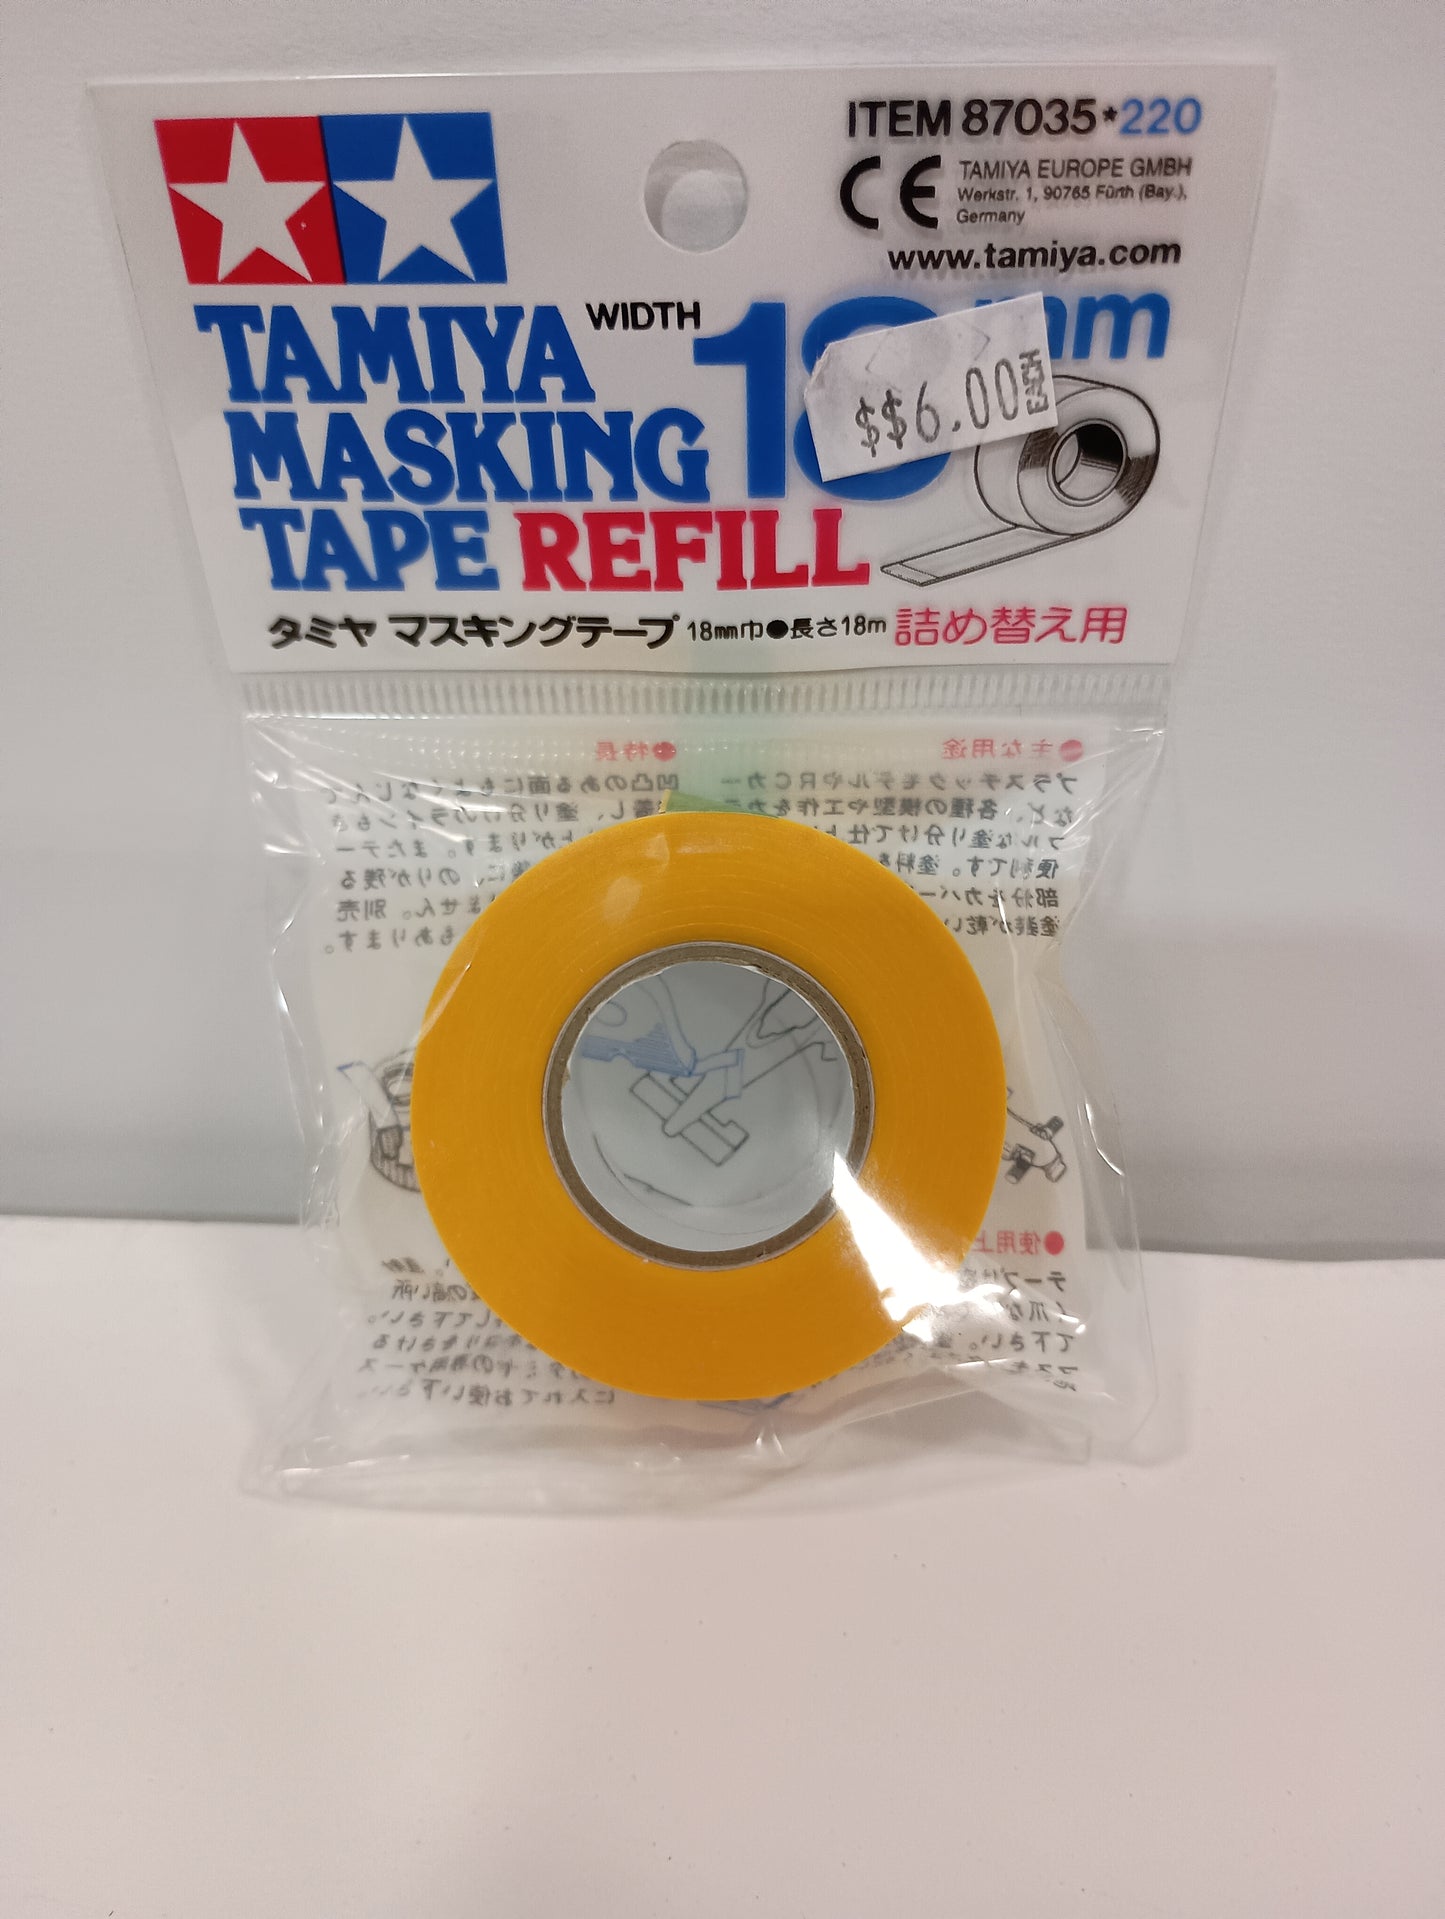 Tamiya Masking tape